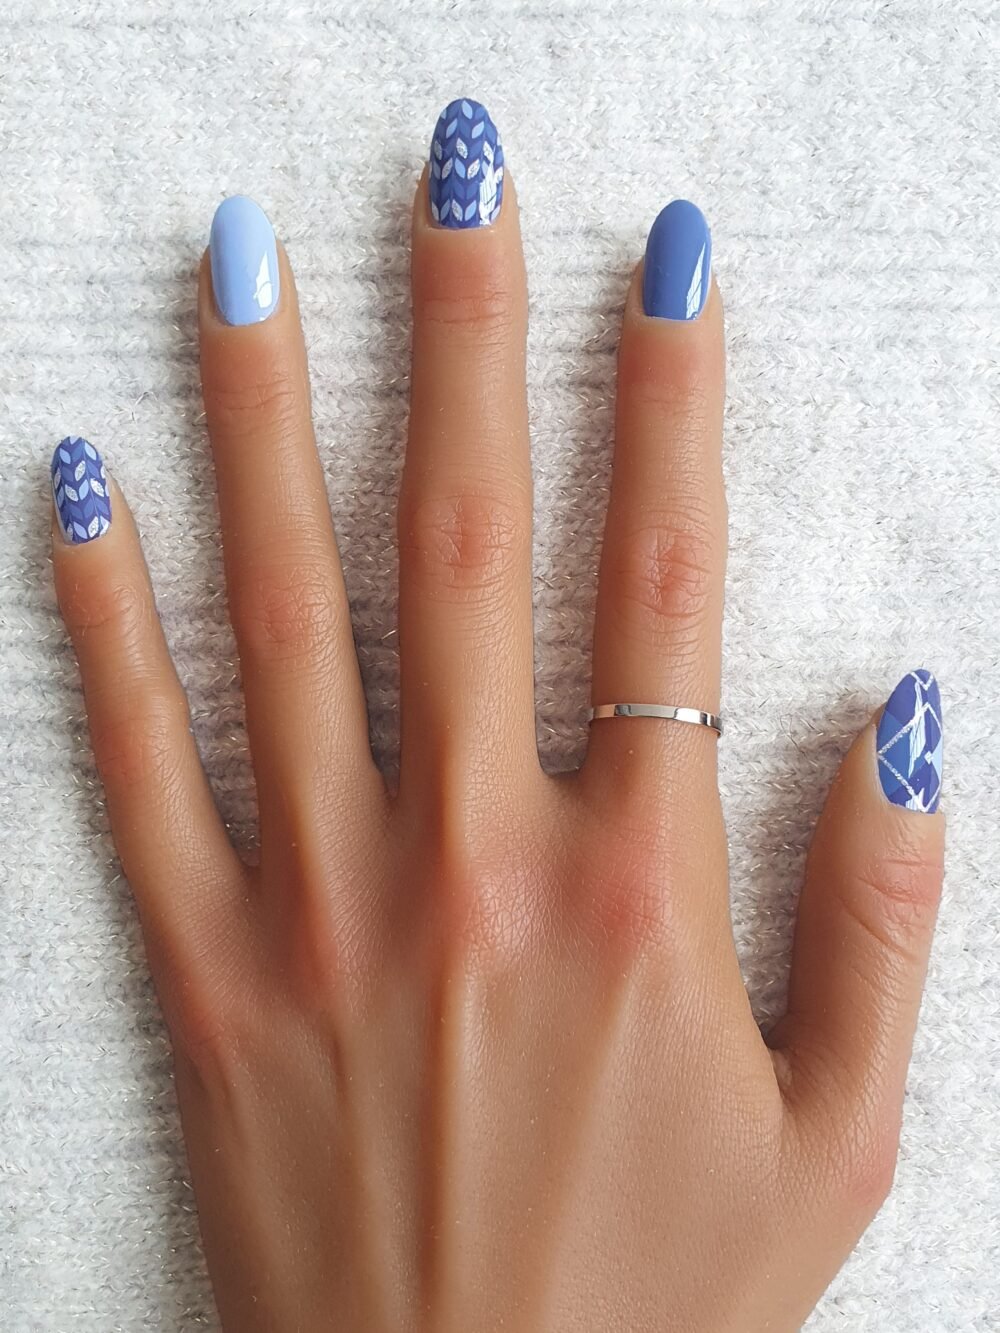 Manucure moderne avec des nail patches bleus et argentés.